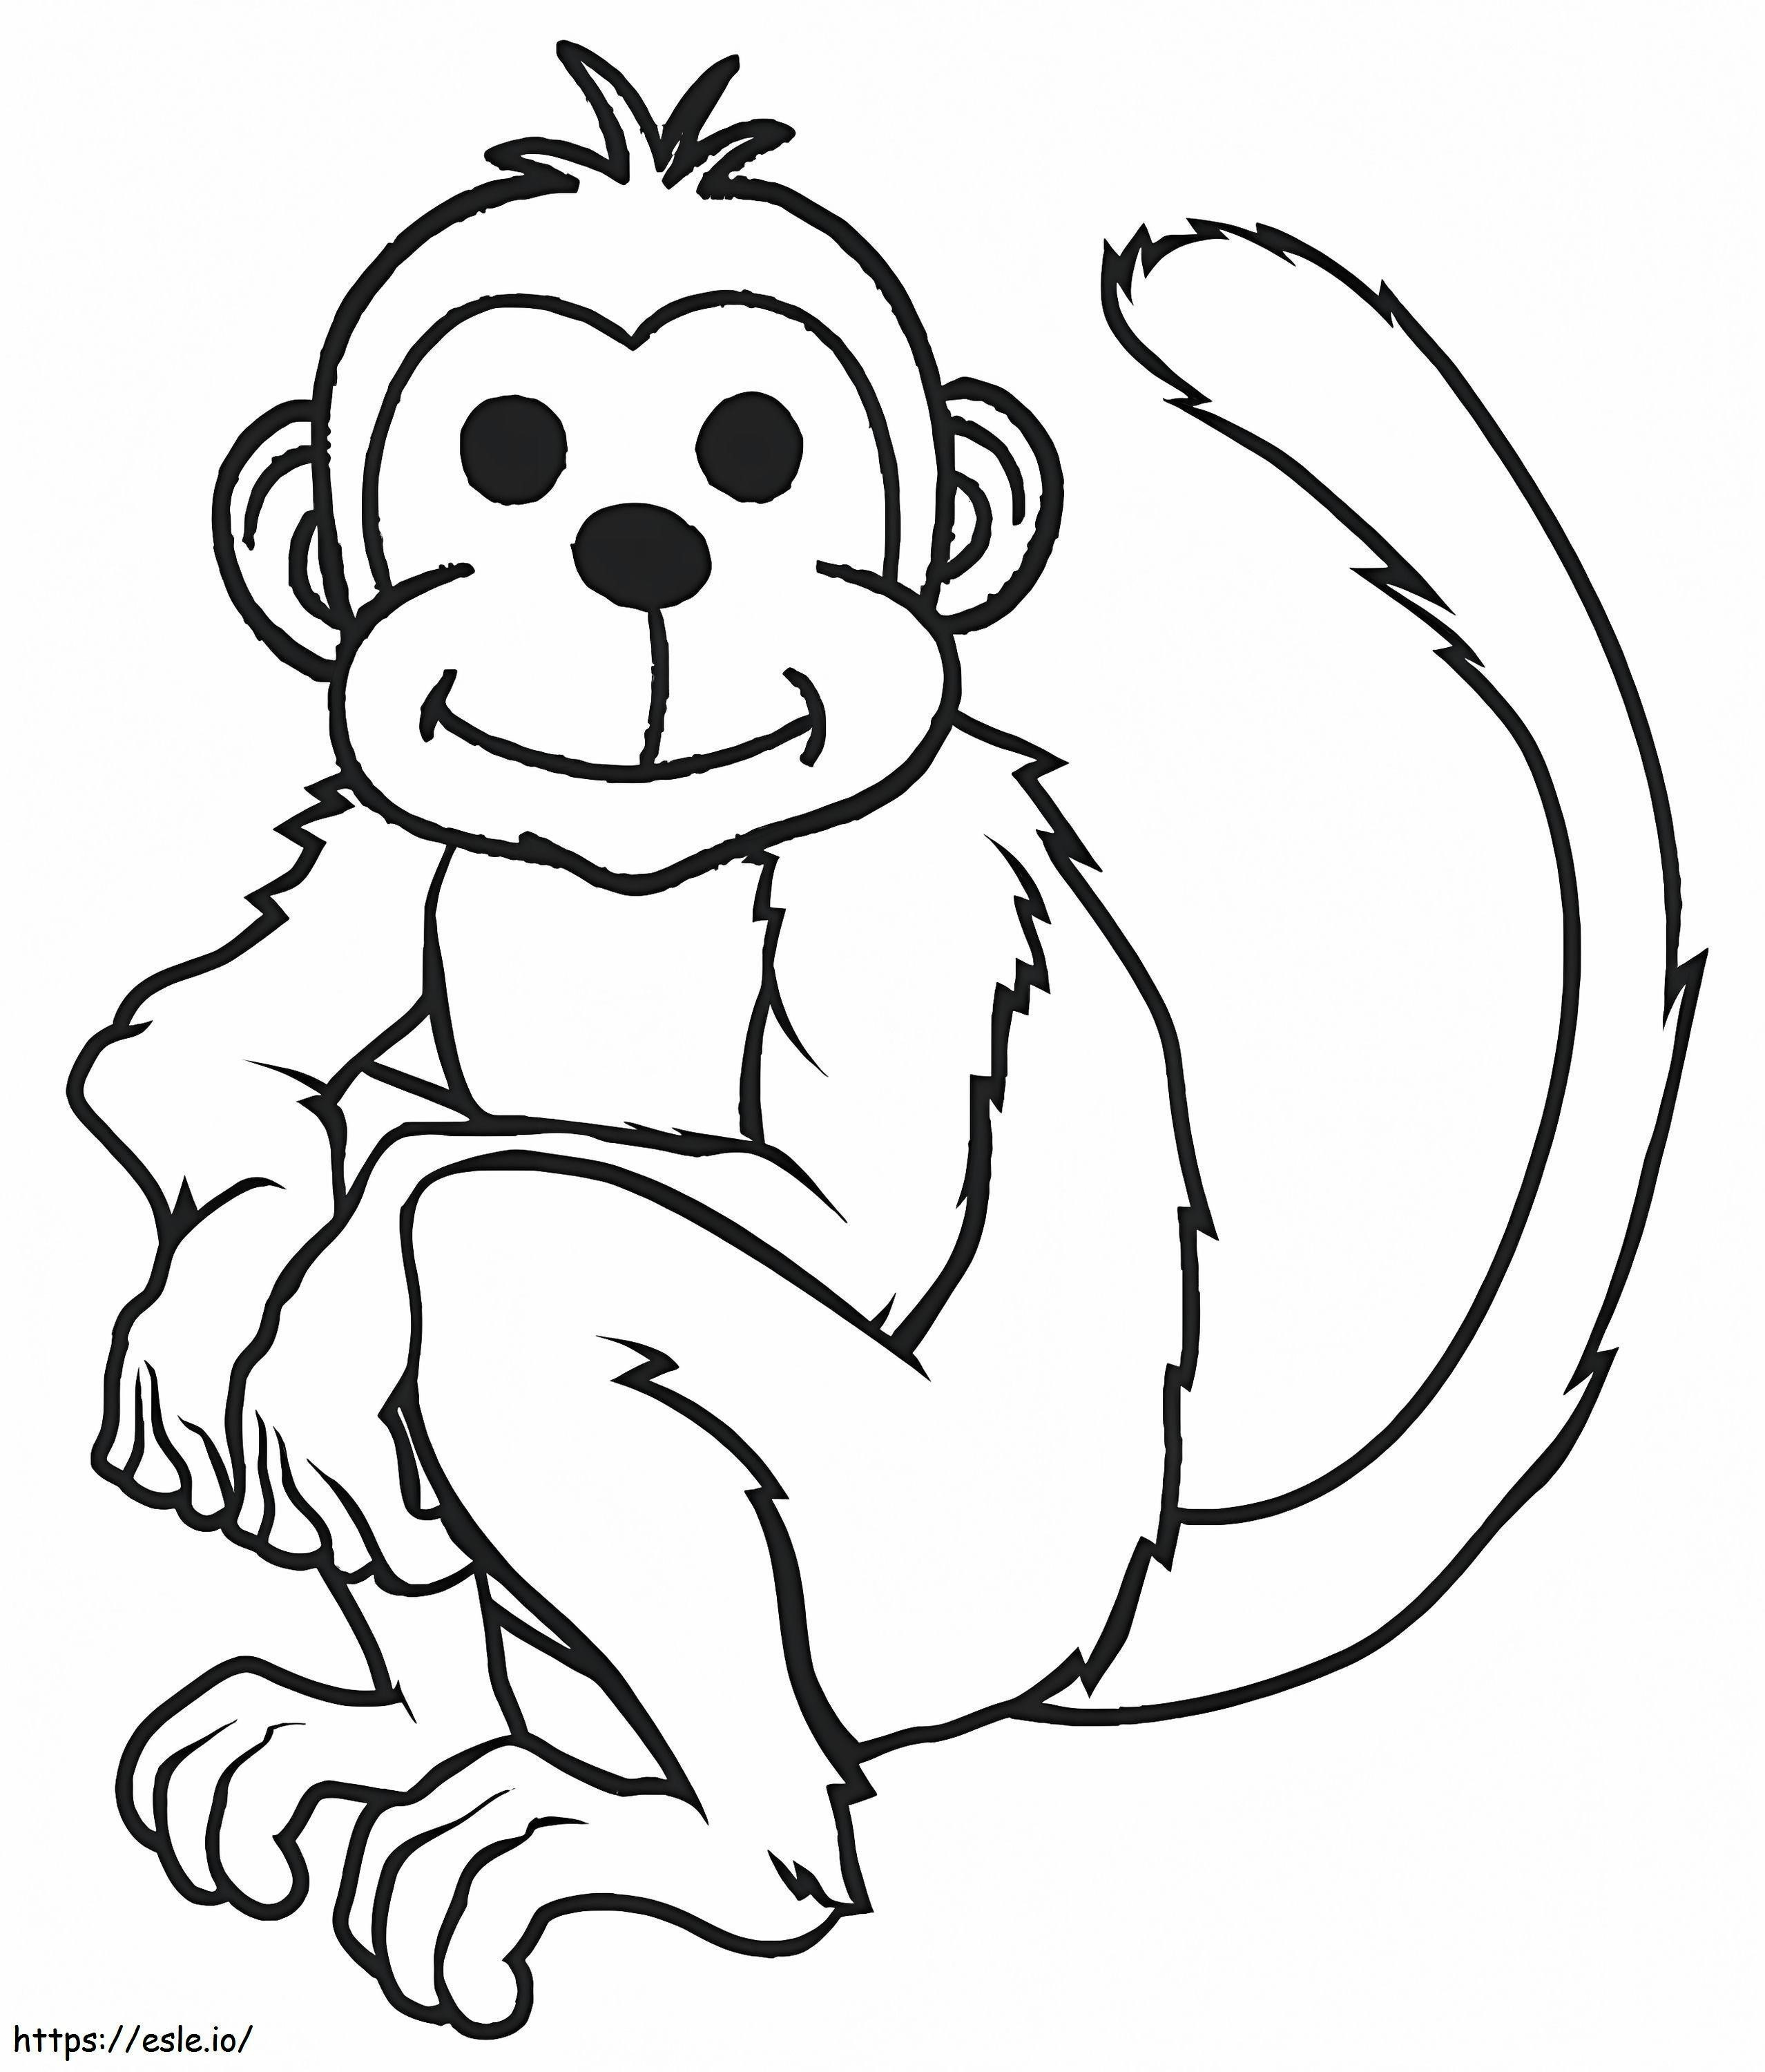 Narysuj siedzącą małpę kolorowanka